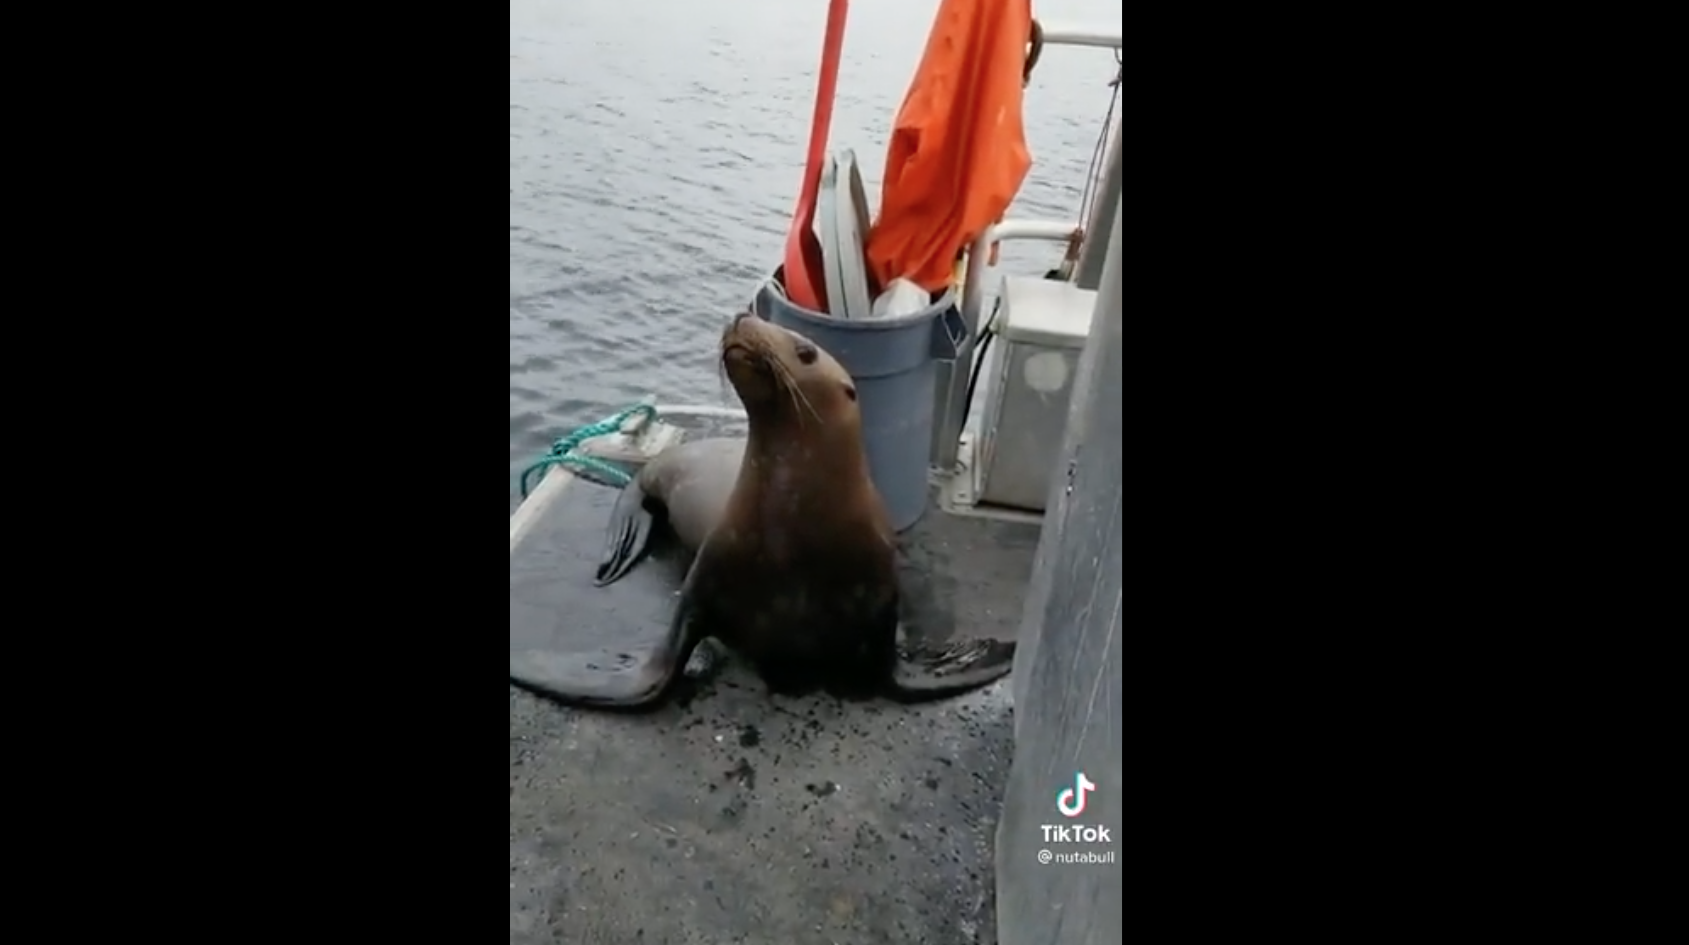 Ay, no: León marino se sube al barco de una mujer para escapar de un grupo de orcas